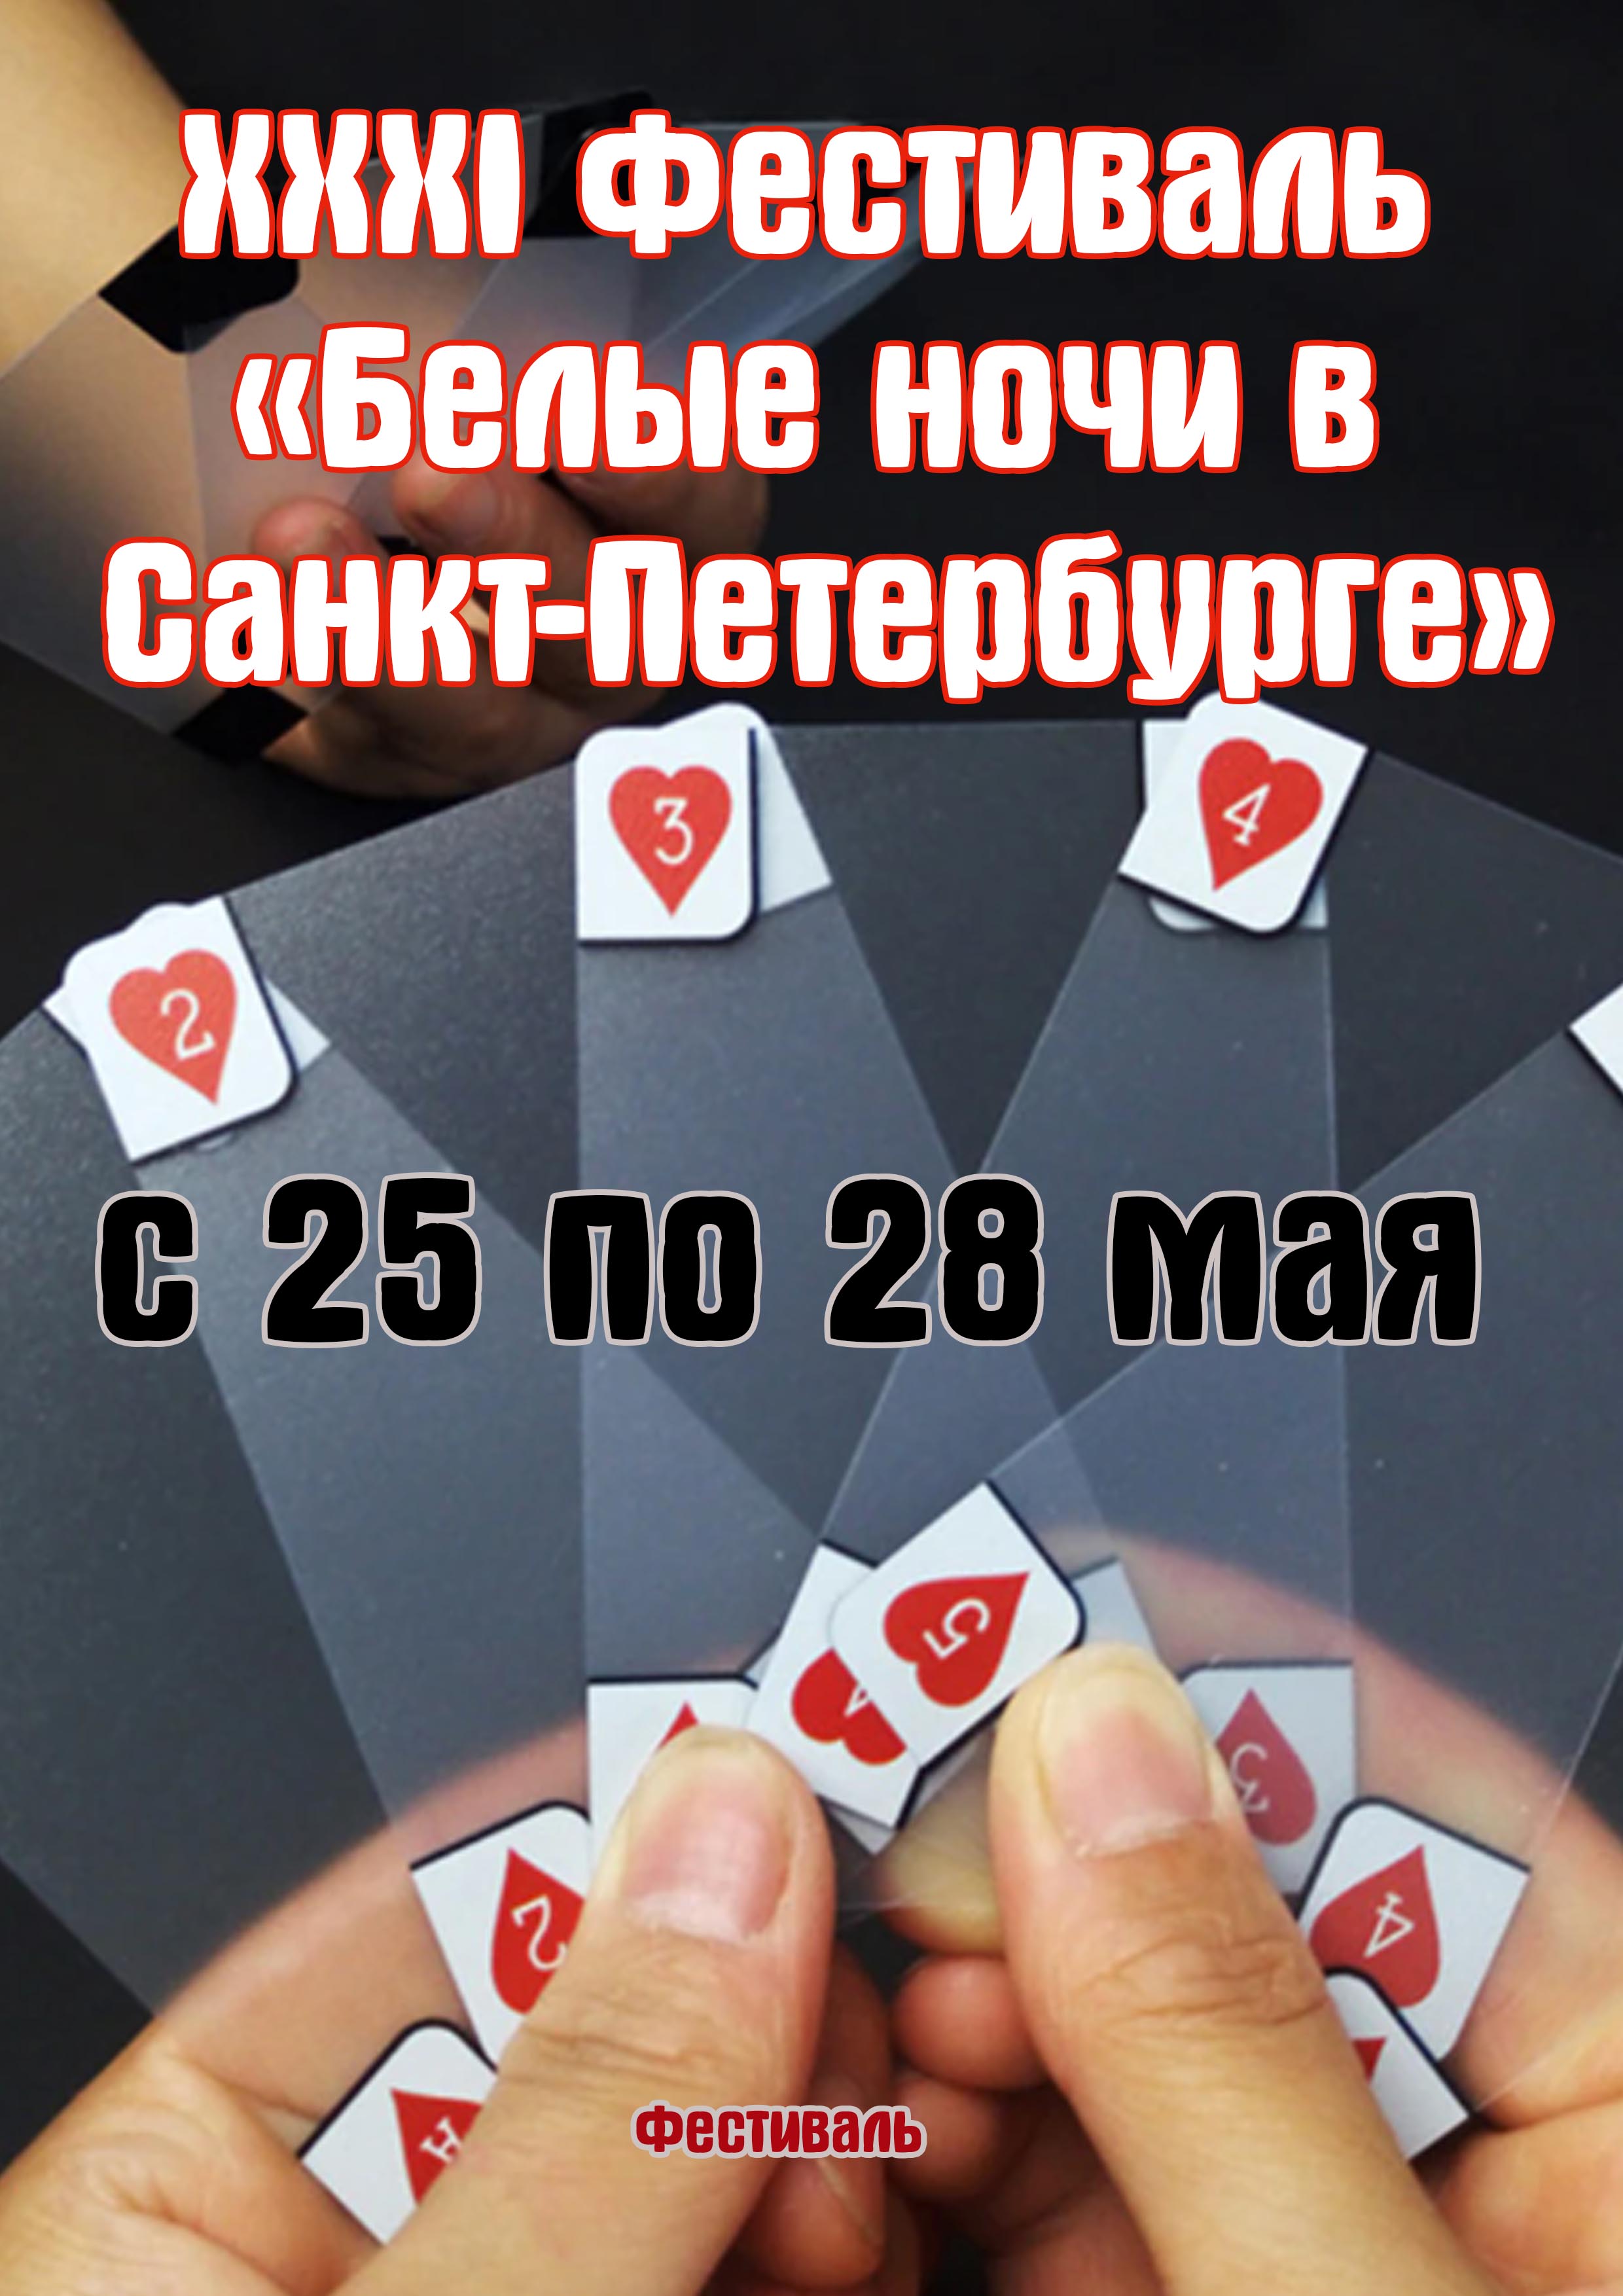 XXXI Фестиваль «Белые ночи в Санкт-Петербурге» 25 мая 2023 года 